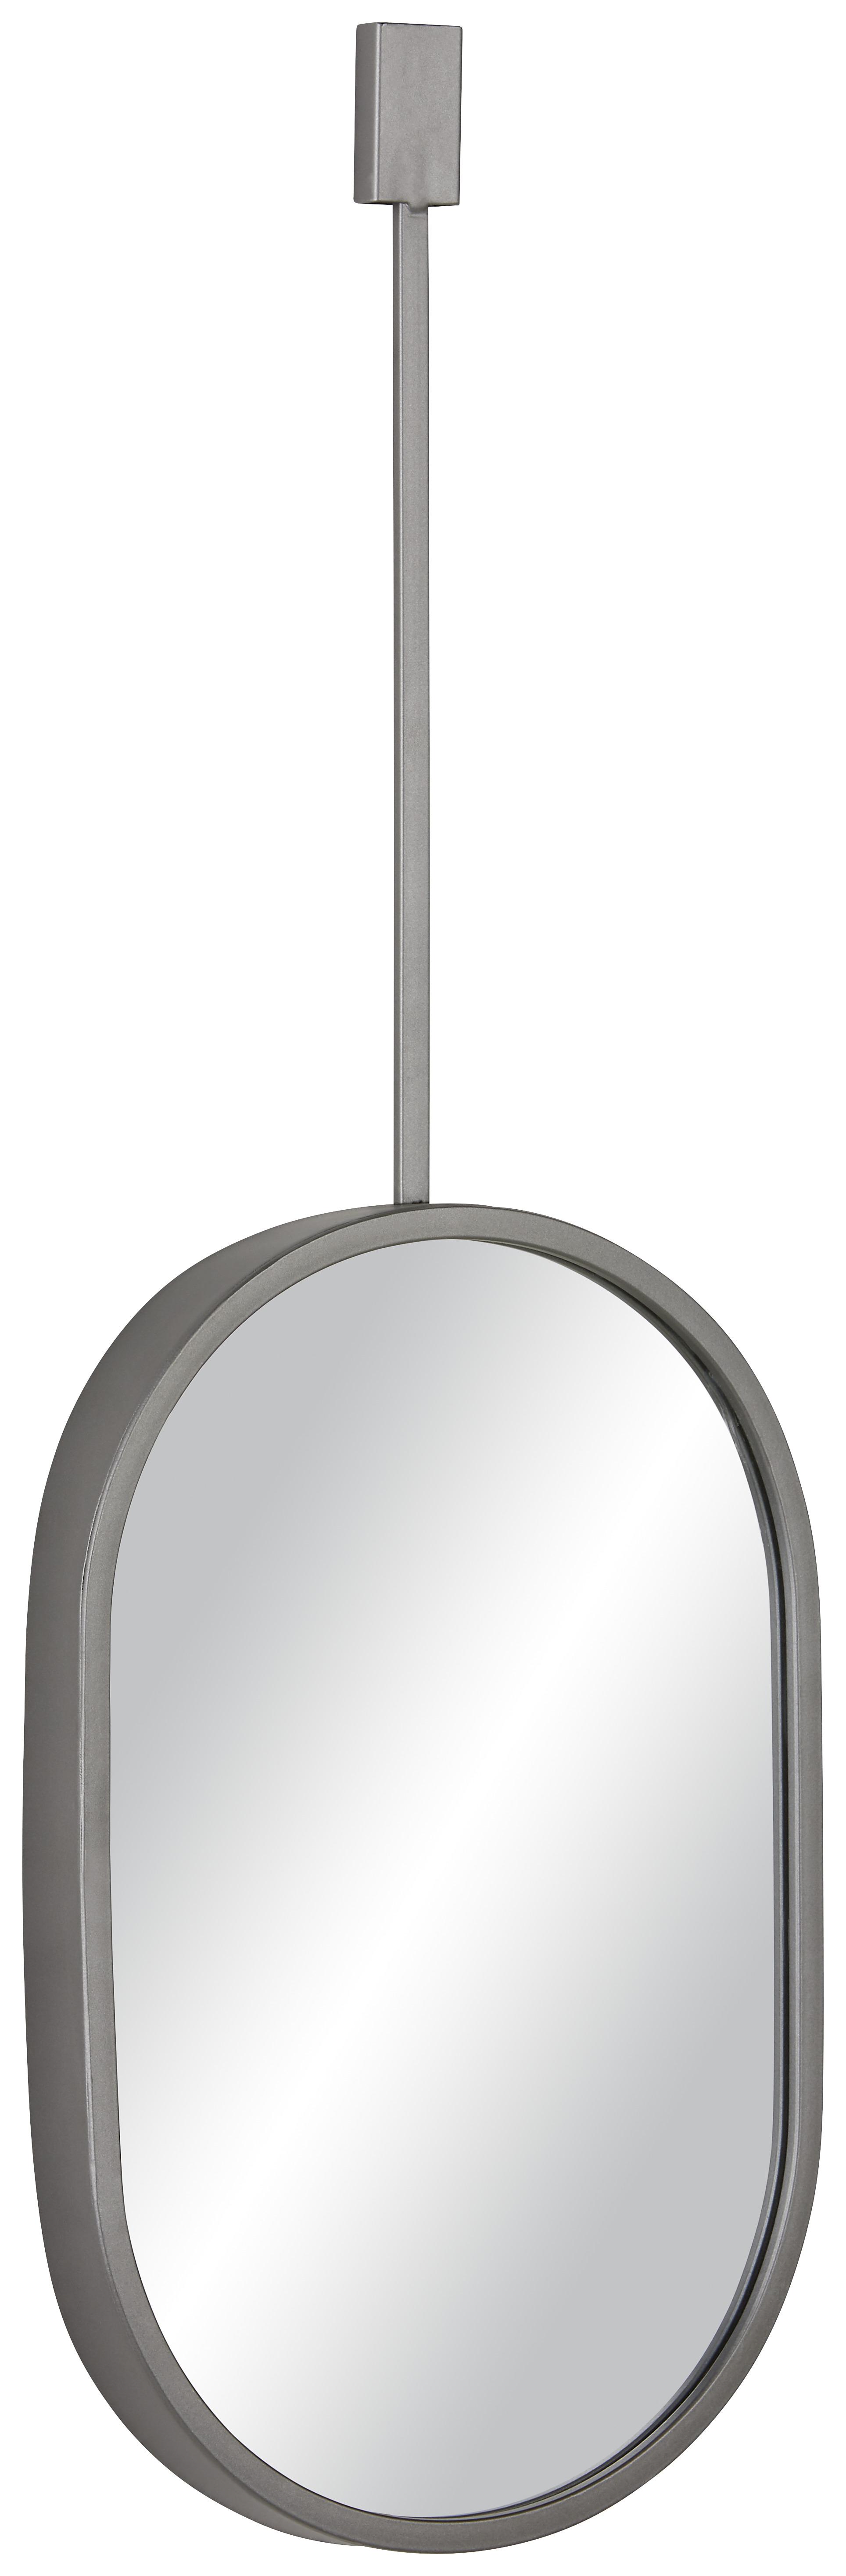 Nástenné Zrkadlo Potpourri -Trend- - sivá, Moderný, kov/sklo (25,5/76/4cm) - Modern Living